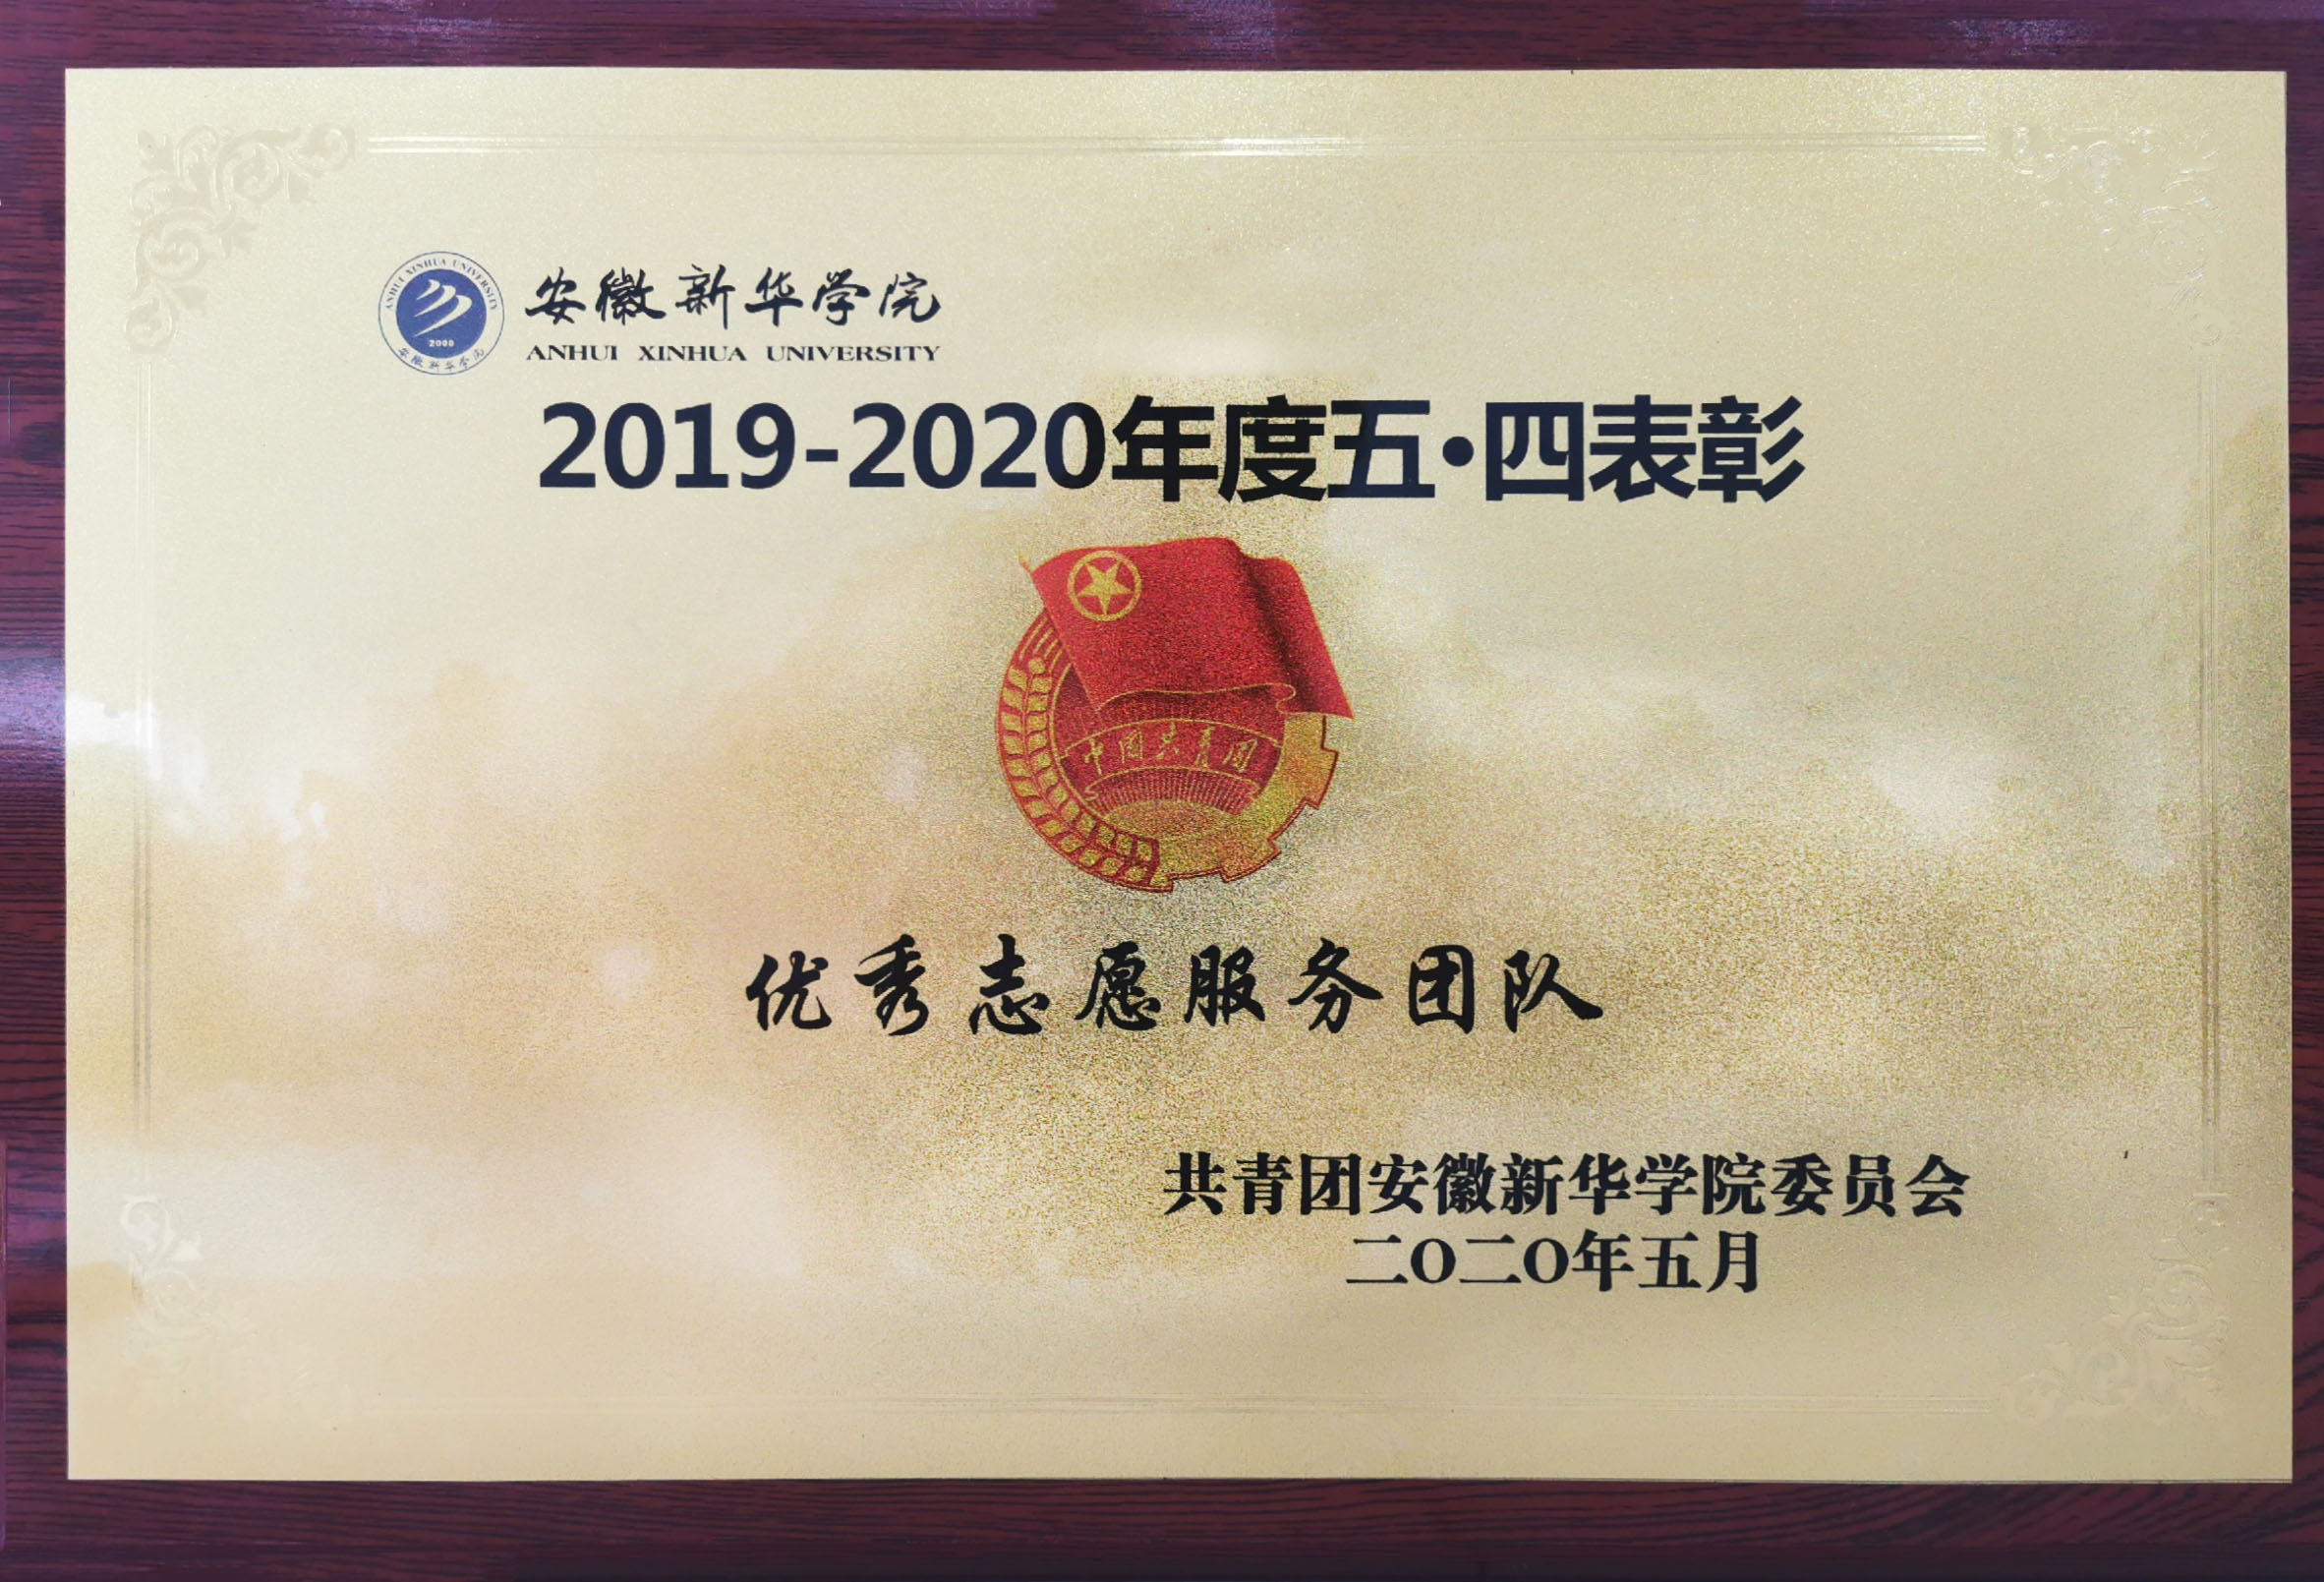 2019-2020年度五·四表彰优秀志愿服务团队